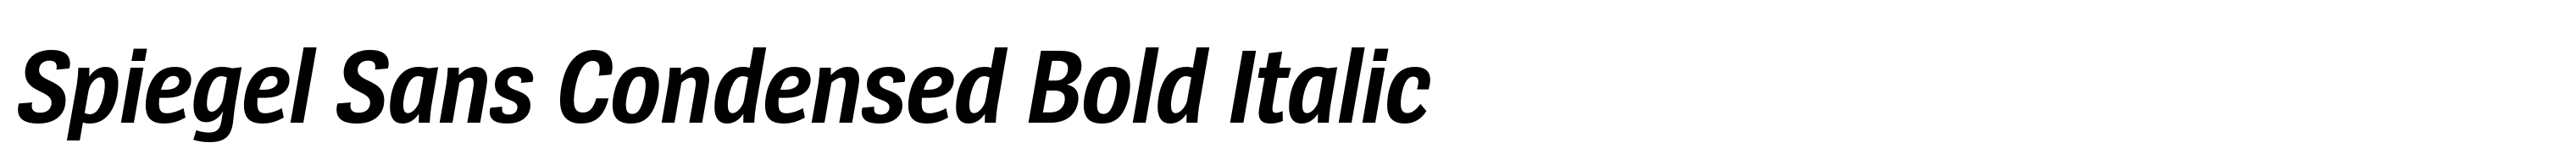 Spiegel Sans Condensed Bold Italic